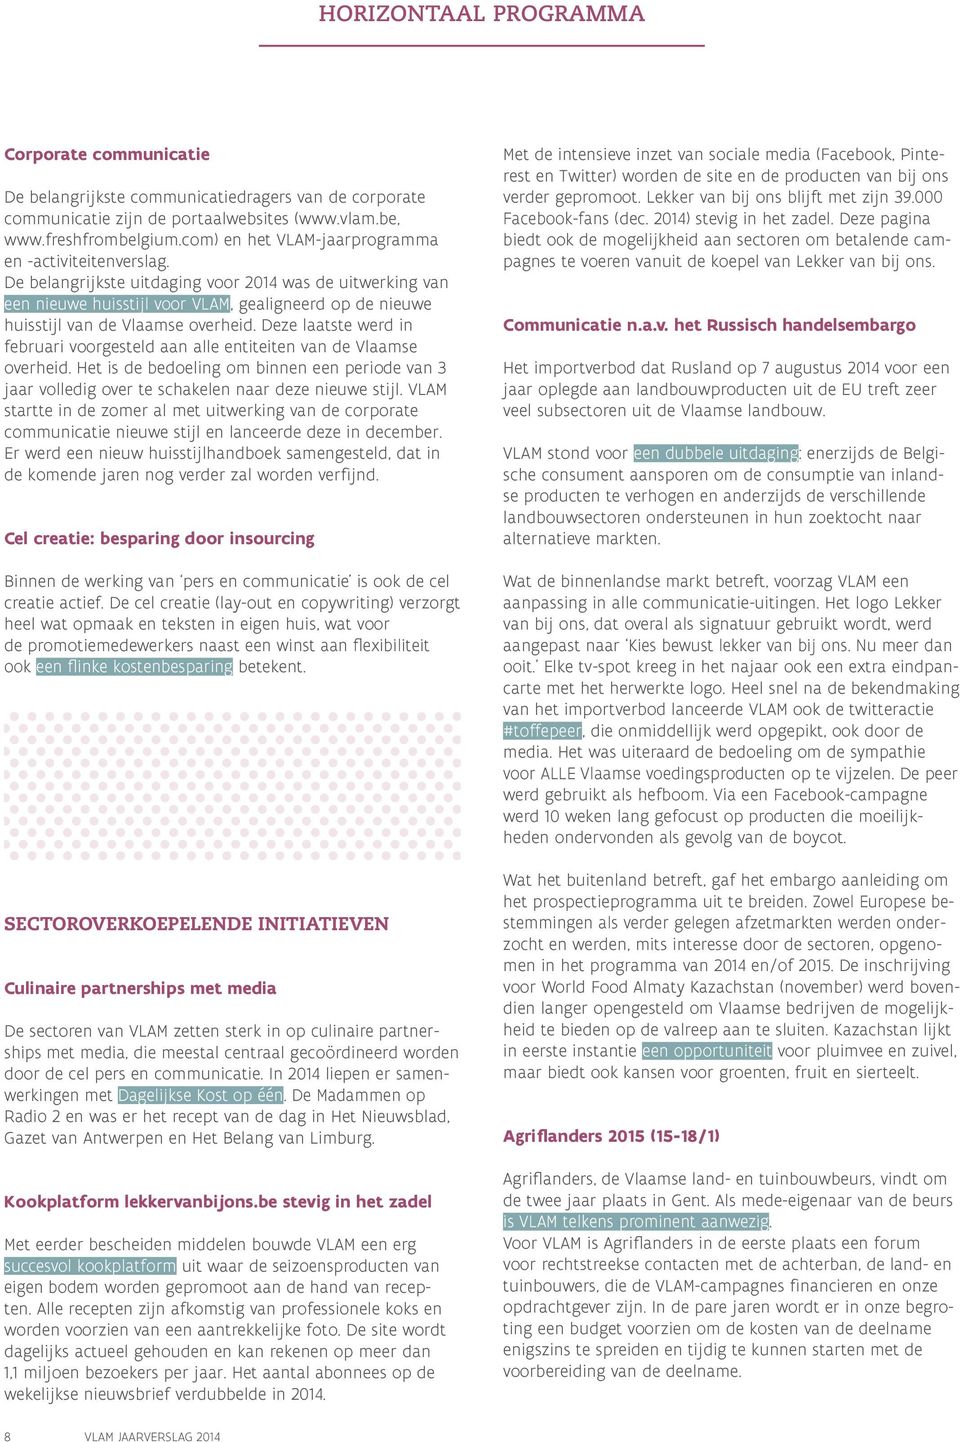 De belangrijkste uitdaging voor 2014 was de uitwerking van een nieuwe huisstijl voor VLAM, gealigneerd op de nieuwe huisstijl van de Vlaamse overheid.